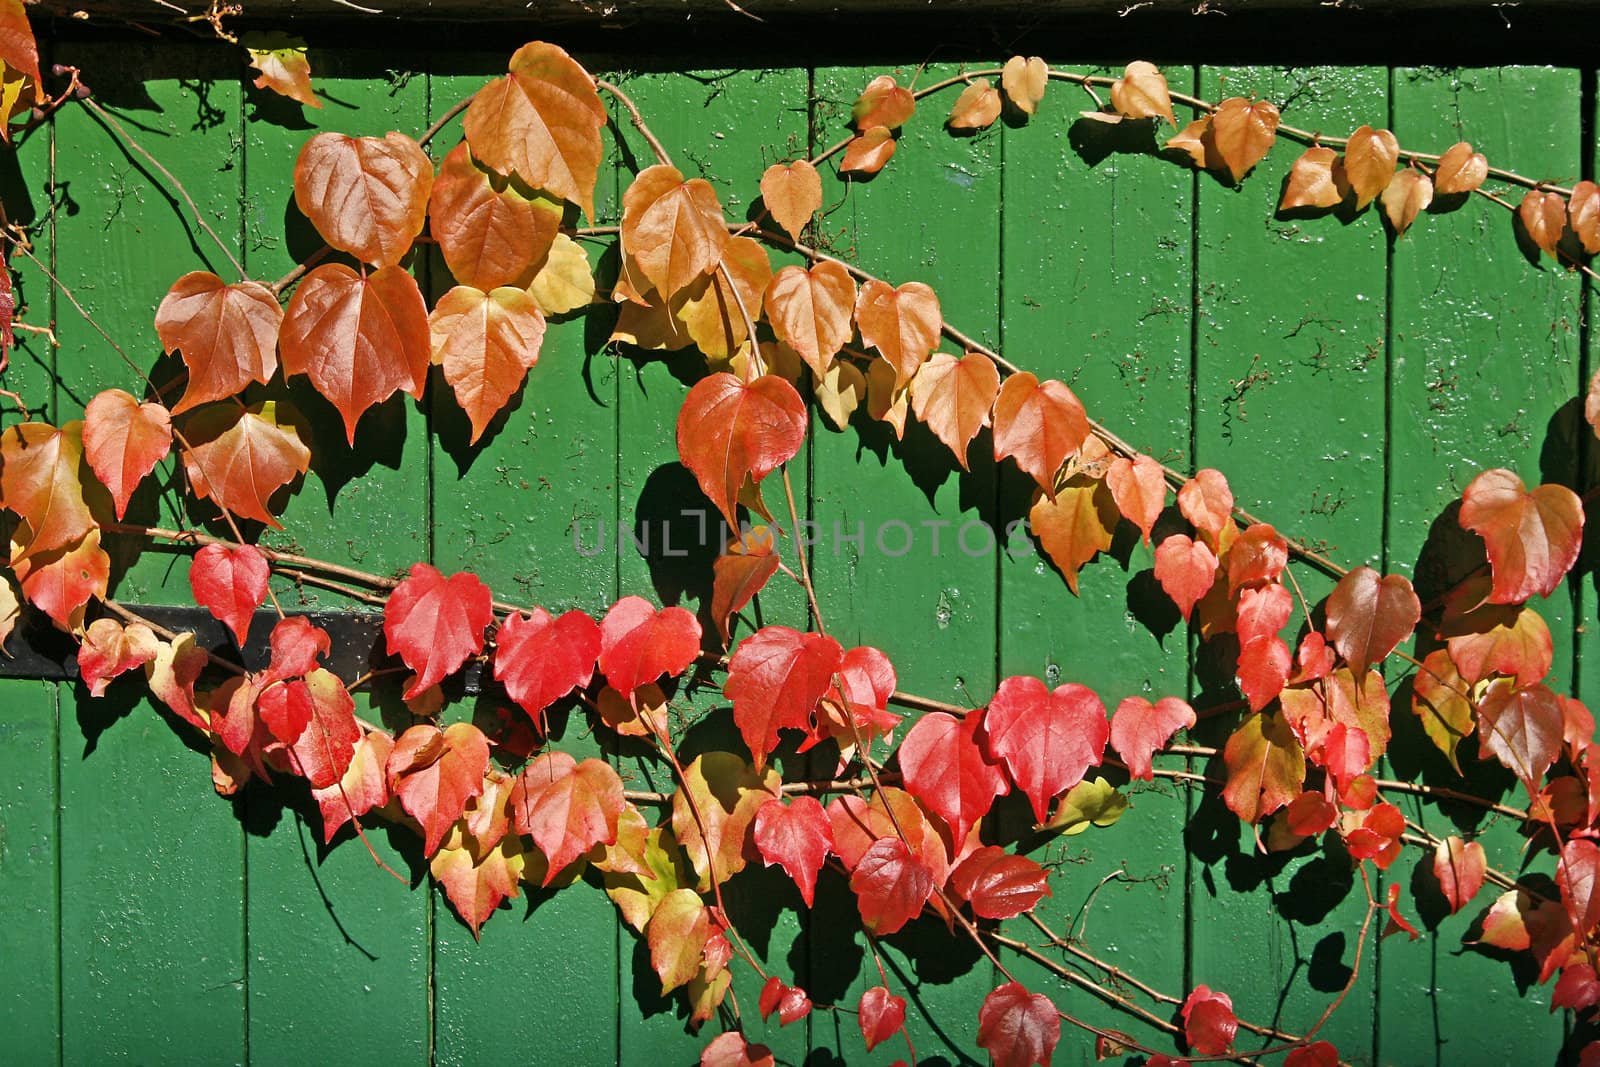 Parthenocissus on autumn. Parthenocissus, Jungfernreben, Wilder Wein